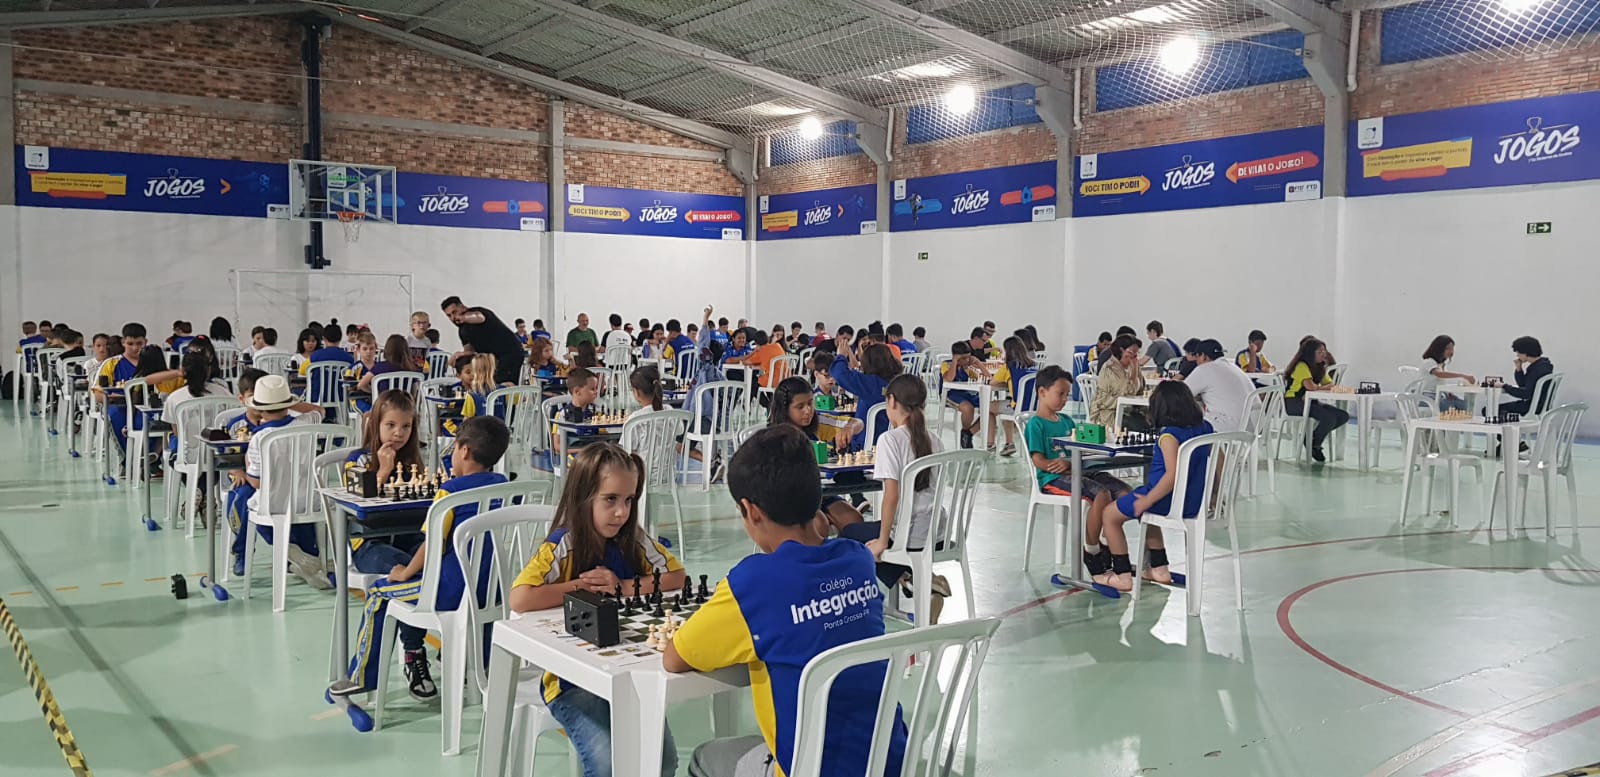 II Festival de Xadrez Itaipu Binacional - FEXPAR - Federação de